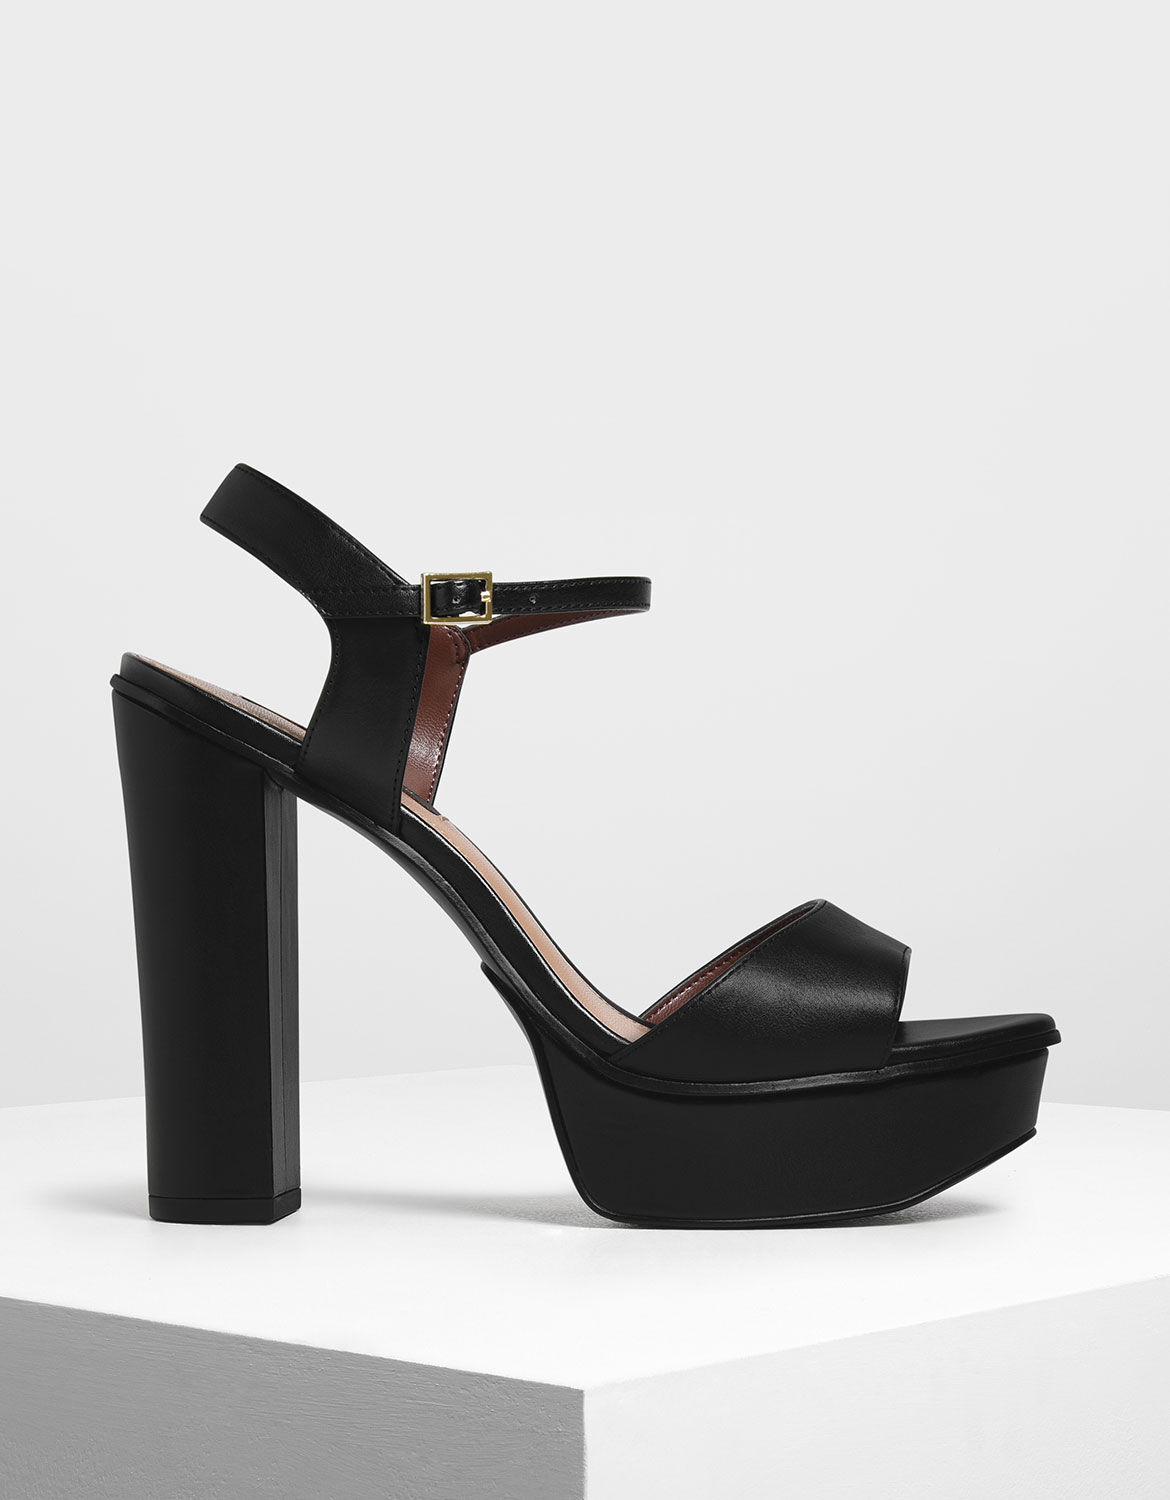 black block heels with platform